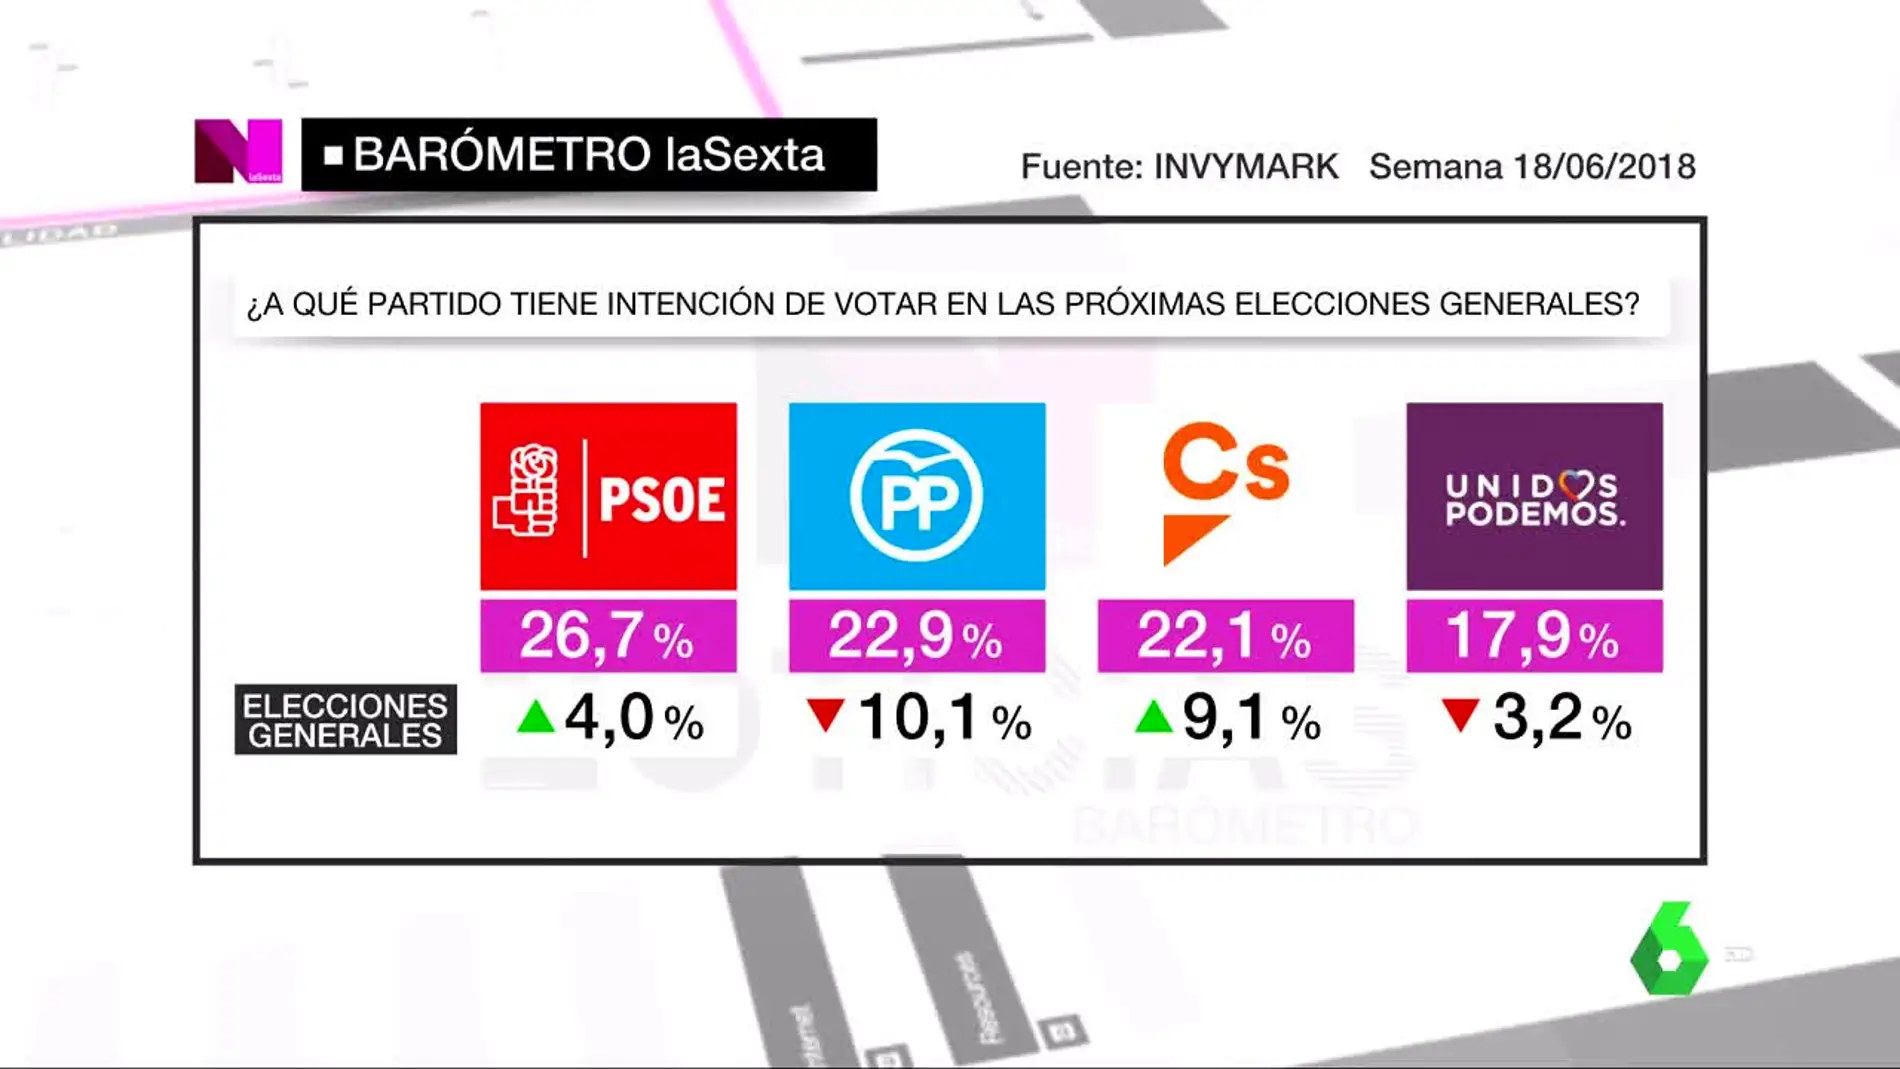 Barómetro laSexta: El PSOE se afianza como primera fuerza política en intención de voto